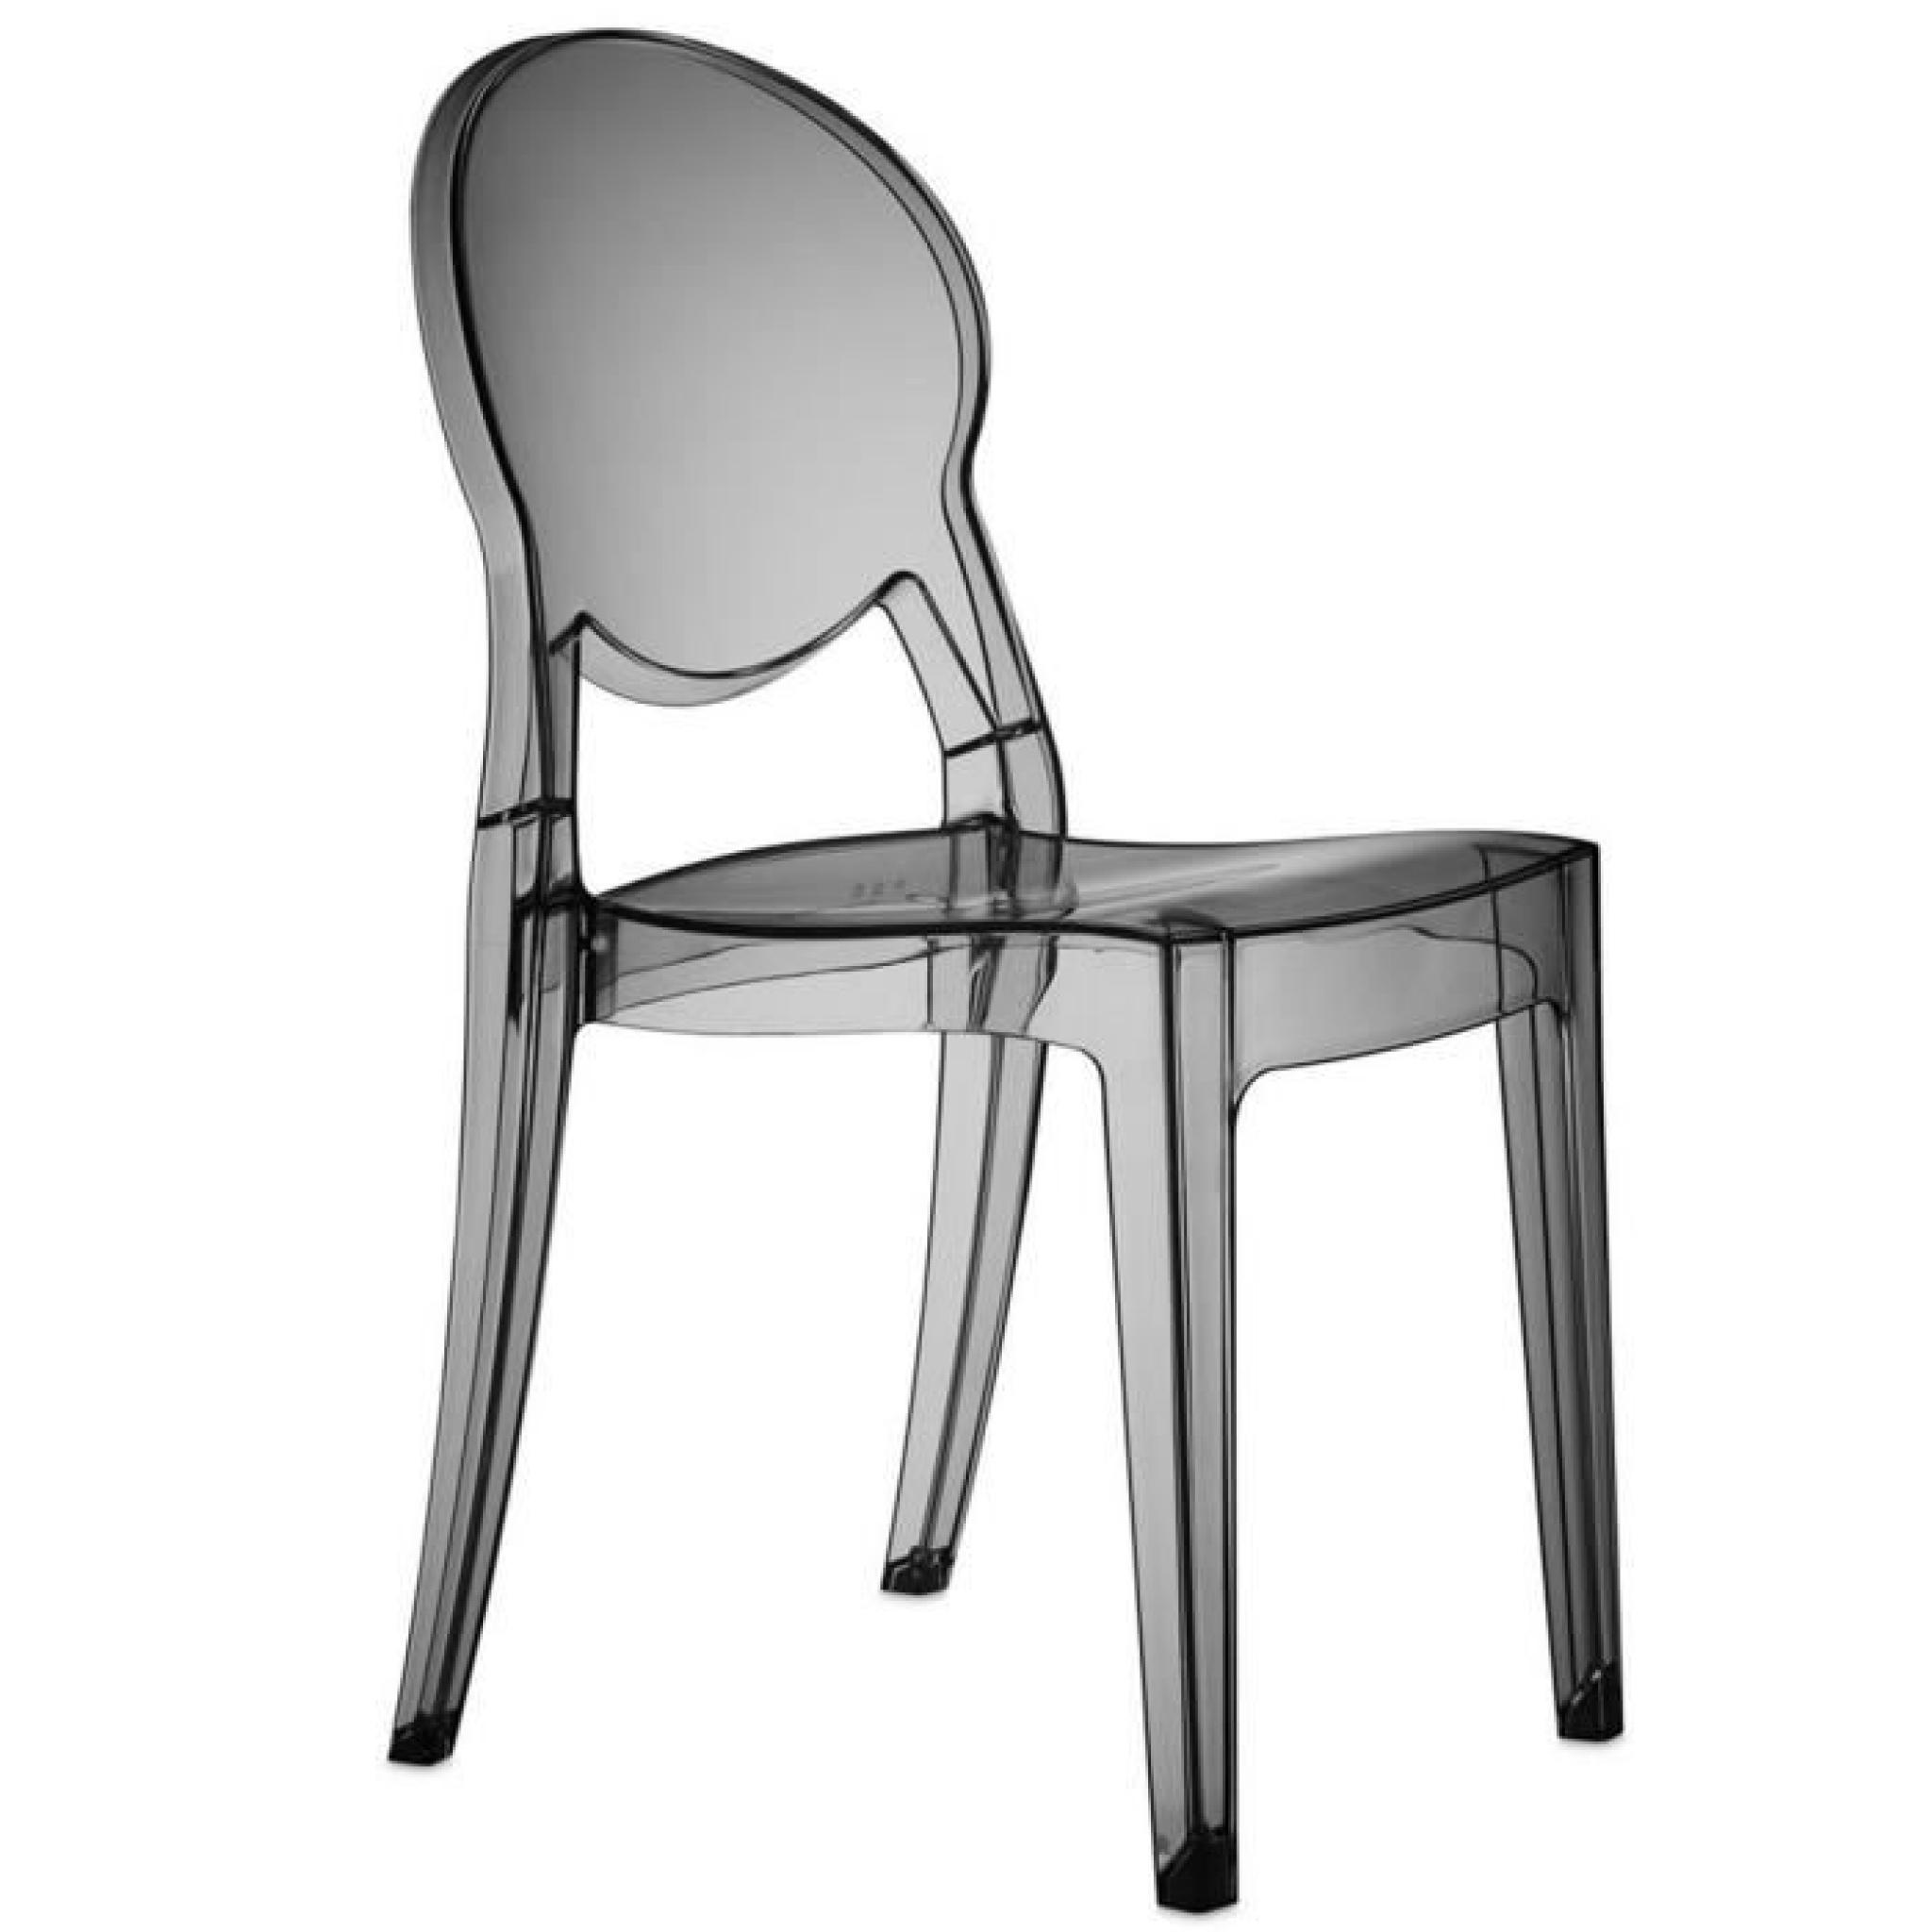 Chaise transparent fumé design Régence Couleur Incolore Matière. Polycarbonate pas cher